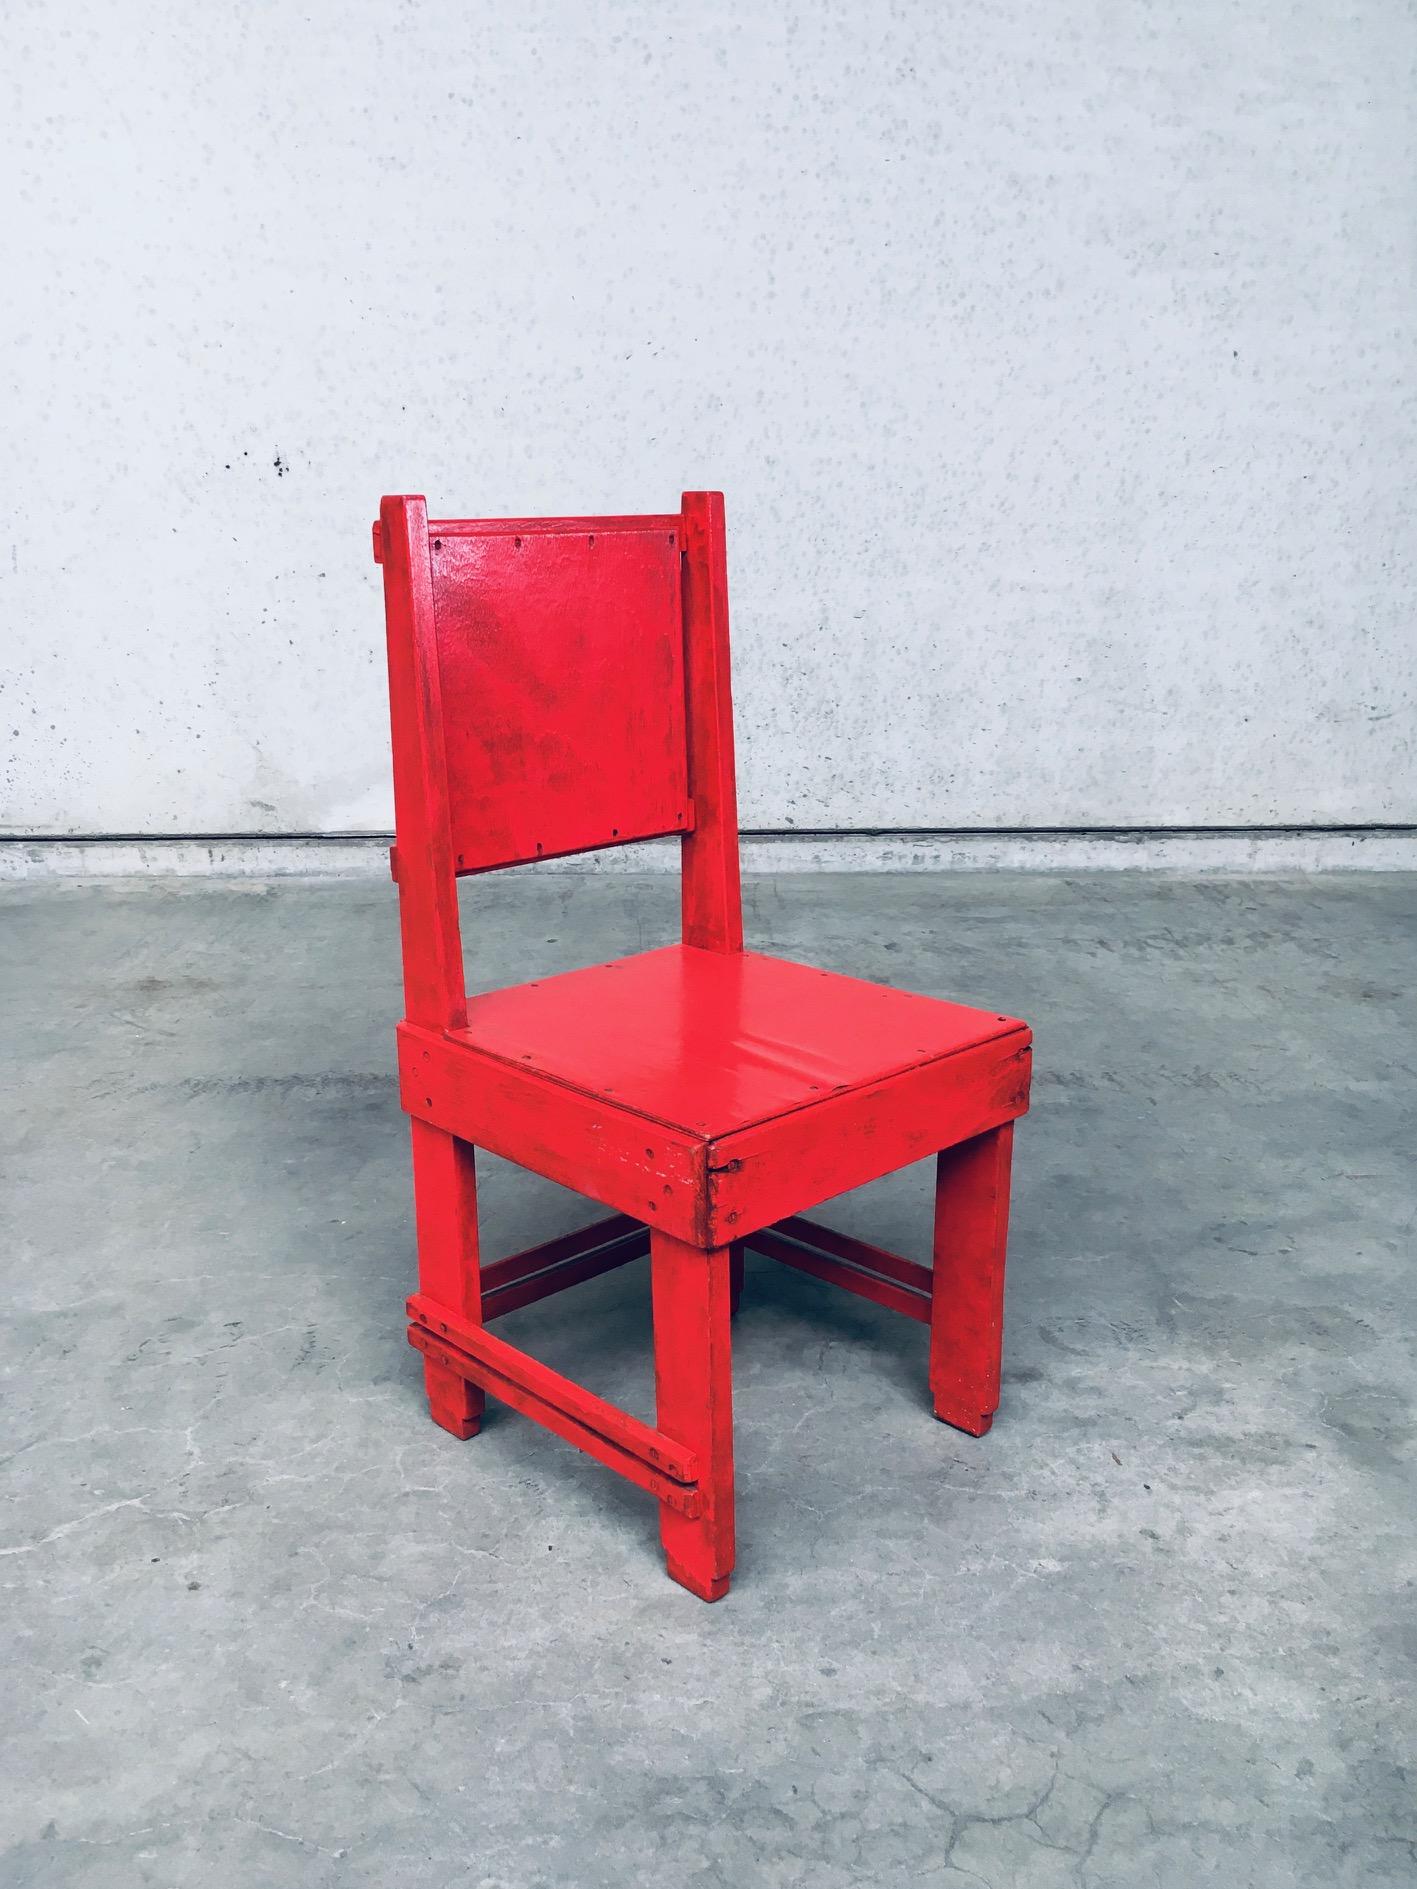 Sehr seltener niederländischer Beistellstuhl der 'De Stijl-Bewegung' des frühen 20. Jahrhunderts, der Jan Wils zugeschrieben wird. Hergestellt in den Niederlanden in den 1920er/30er Jahren. Stuhl aus rot lackierter Eiche, Buche und Sperrholz. Die